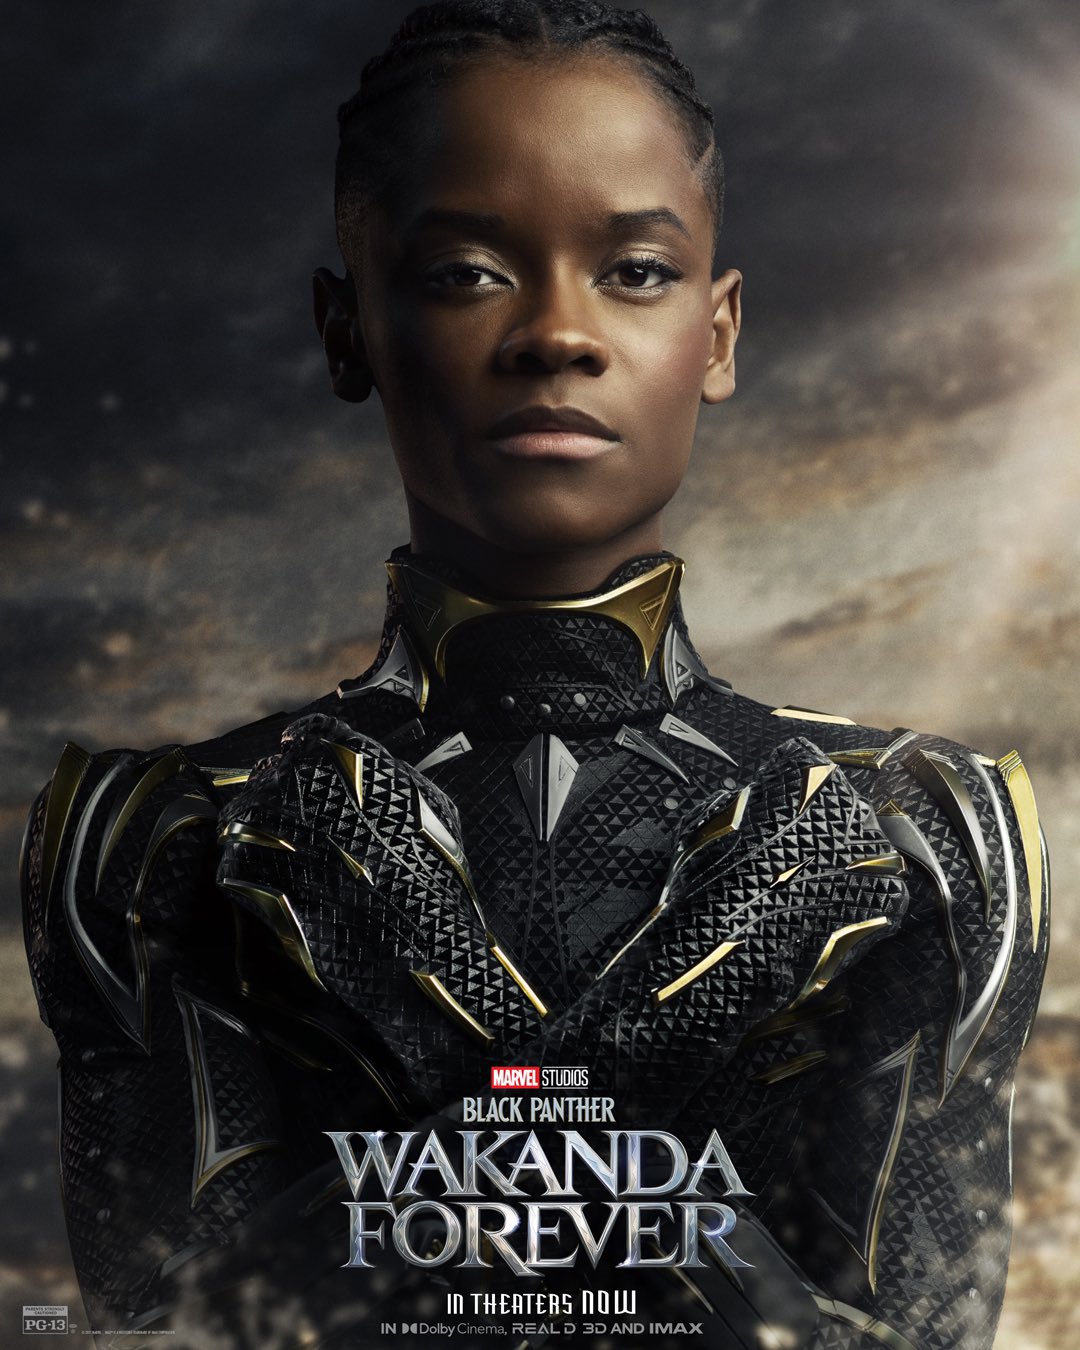 پوستر جدید فیلم Black Panther: Wakanda Forever با محوریت معرفی شوری به‌عنوان پلنگ سیاه بعدی